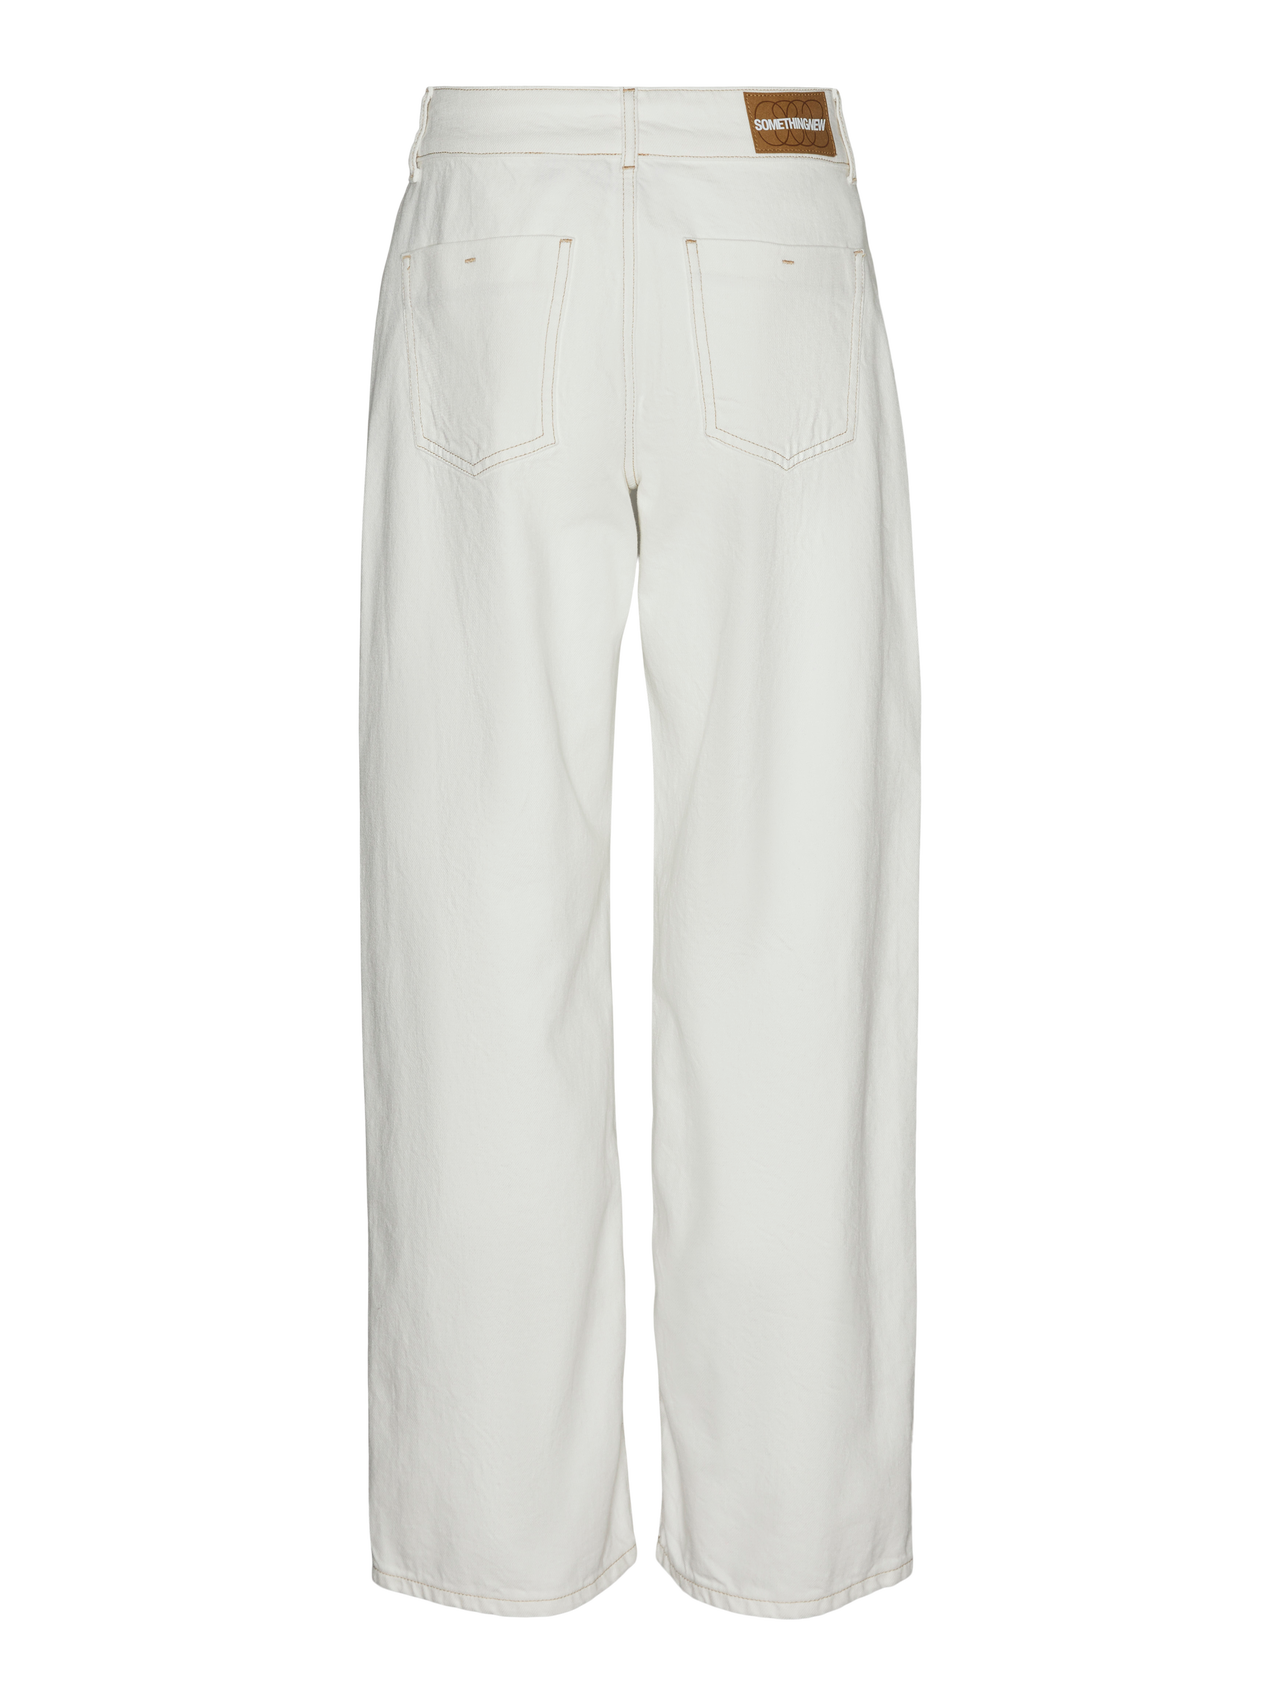 Vero Moda SOMETHINGNEW Jeans -White Denim - 10305265